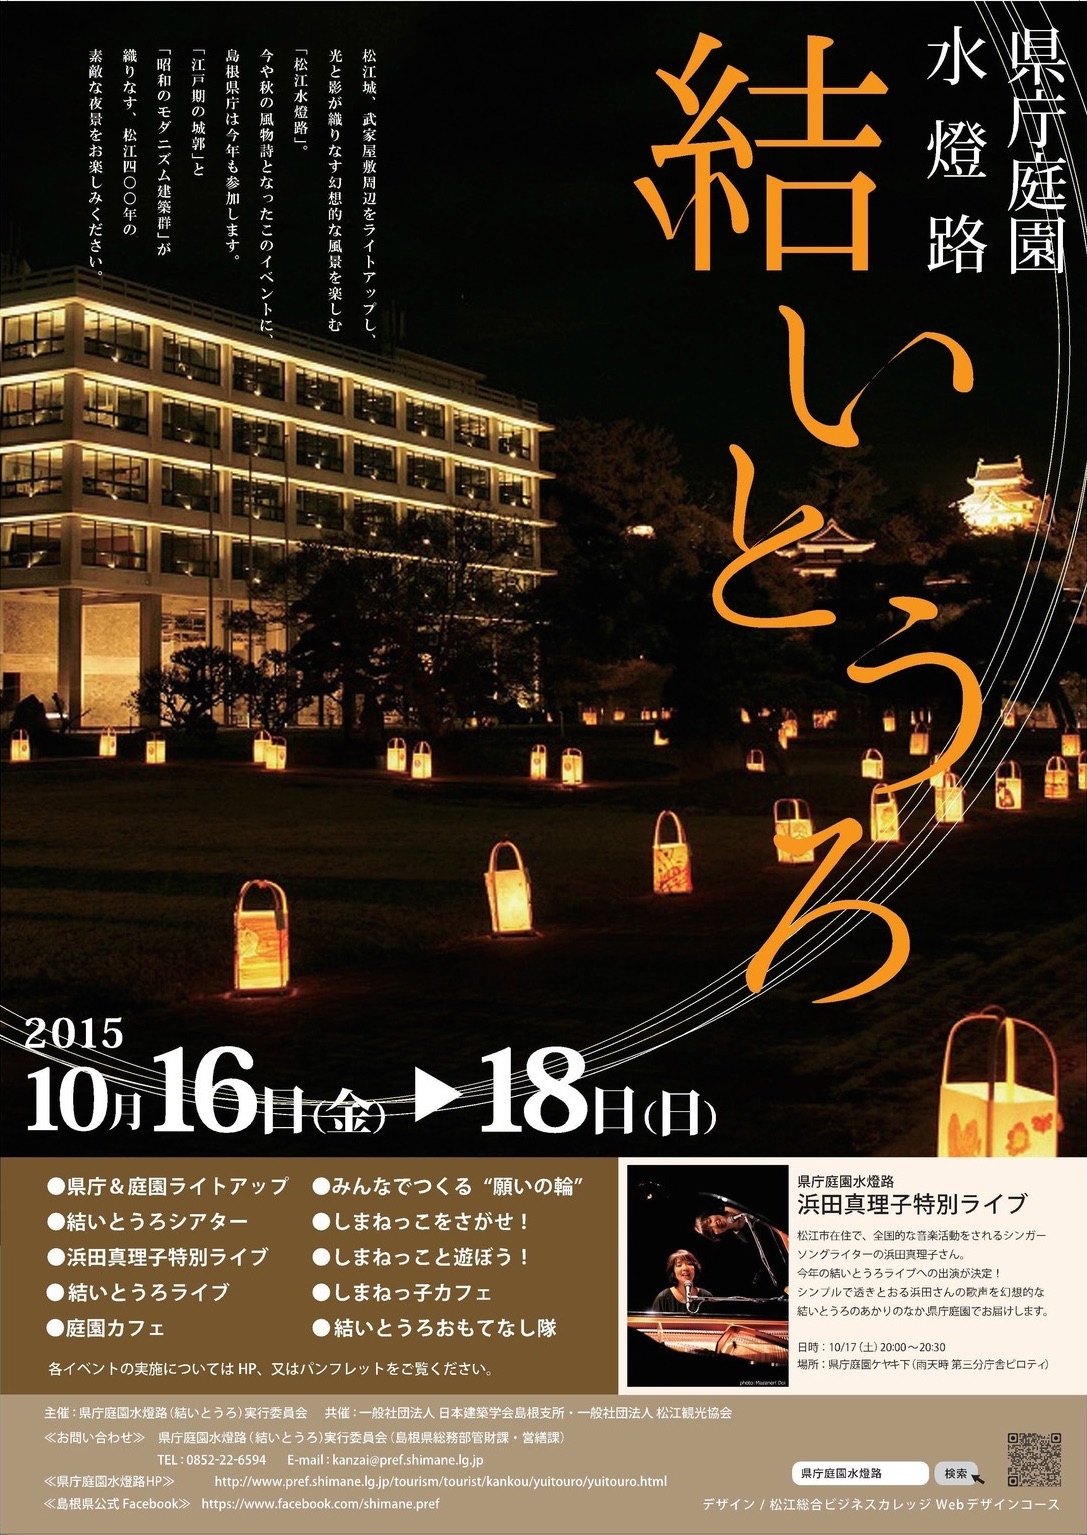 2015年10月17日 松江水燈路関連イベント「結とうろ」フライヤー